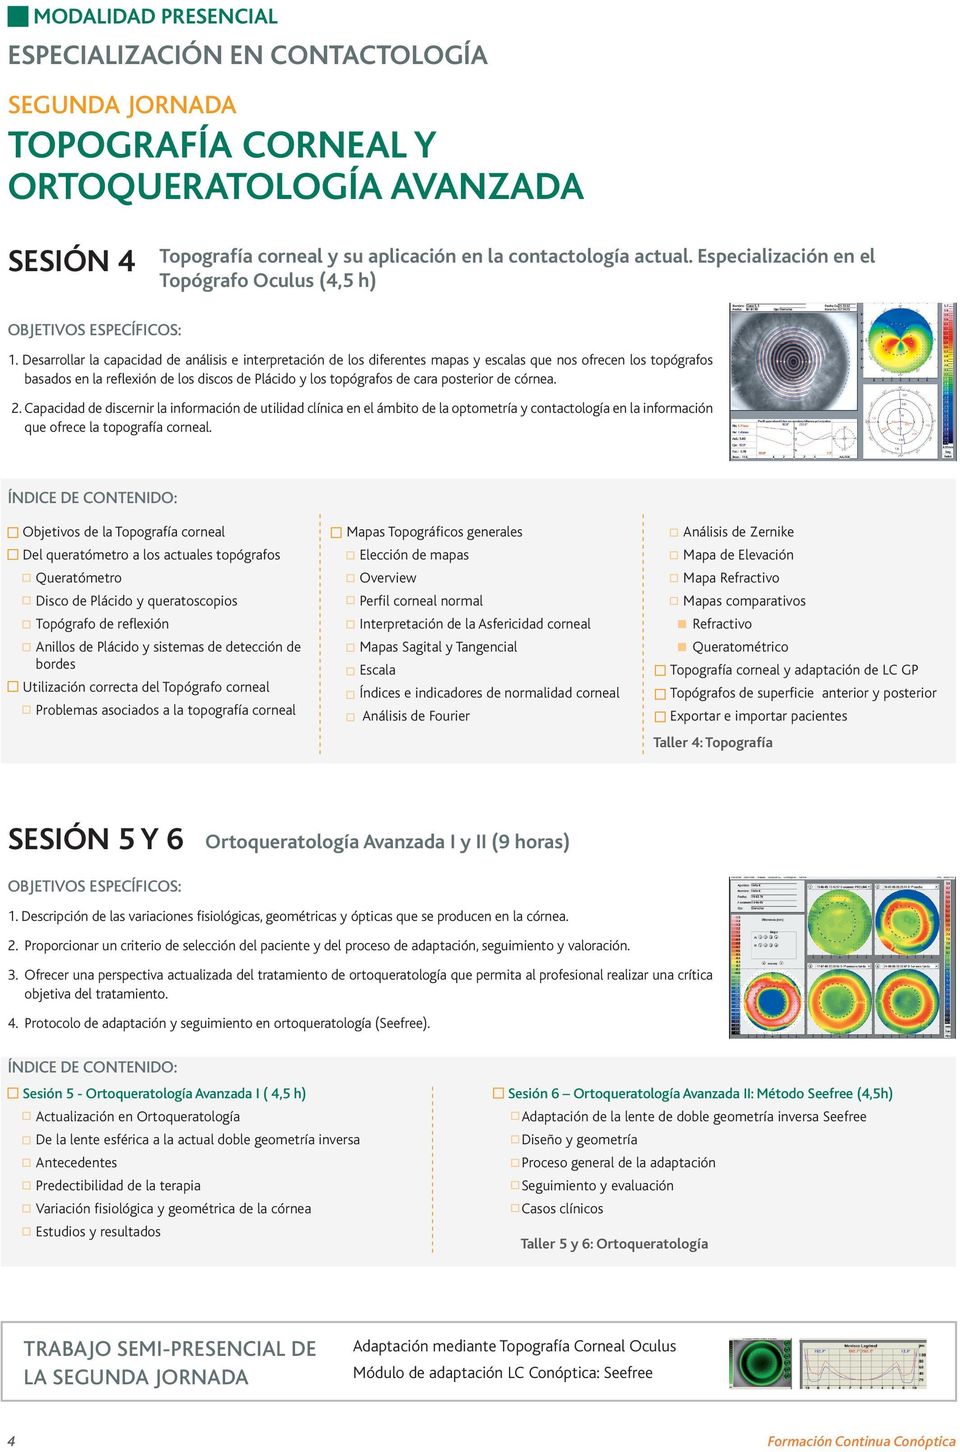 posterior de córnea. 2. Capacidad de discernir la información de utilidad clínica en el ámbito de la optometría y contactología en la información que ofrece la topografía corneal.